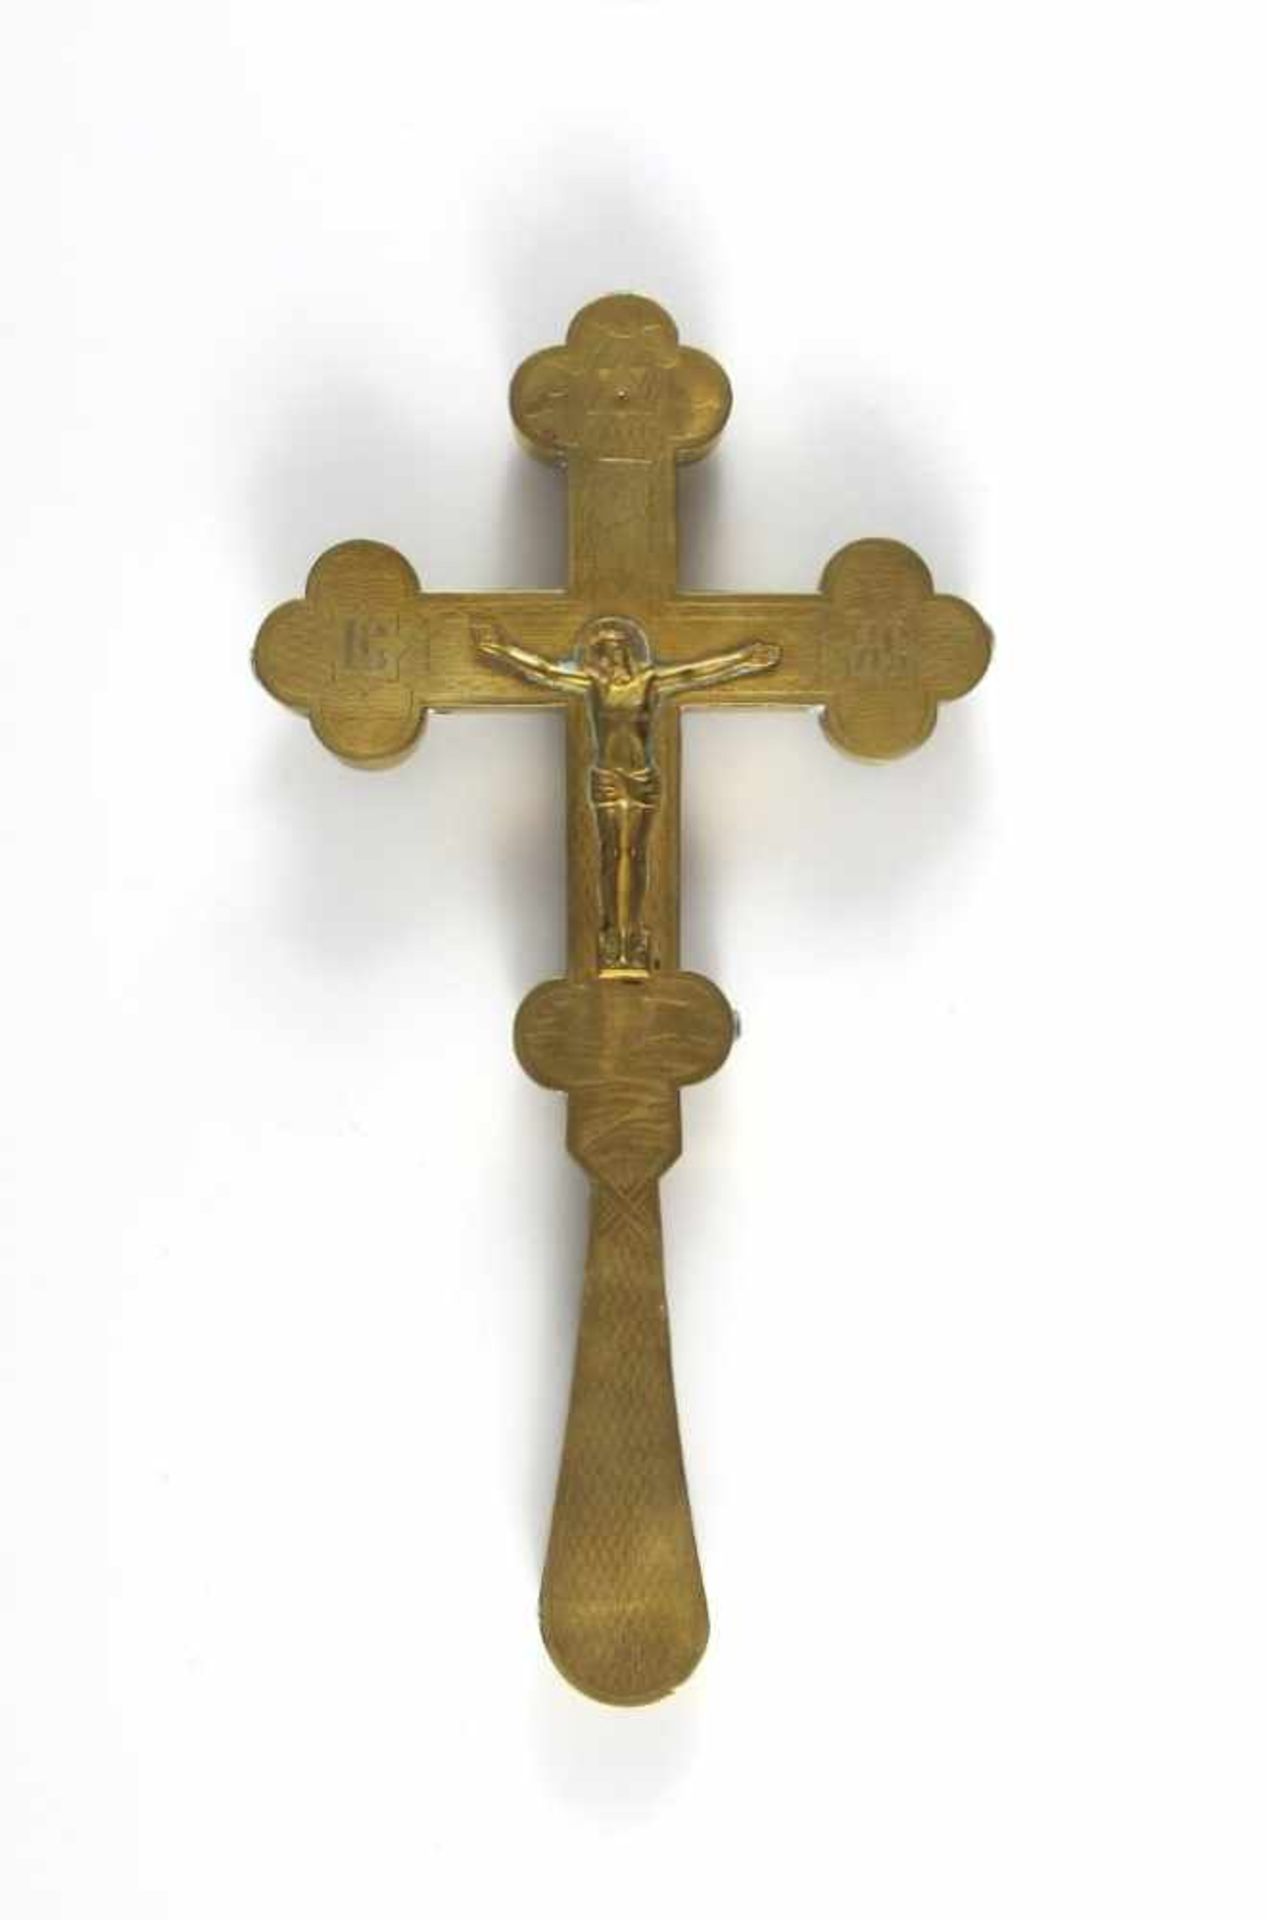 Orthodoxes Segens-/Reliquienkreuz. Messing. 19. Jh. H 21,5 cm